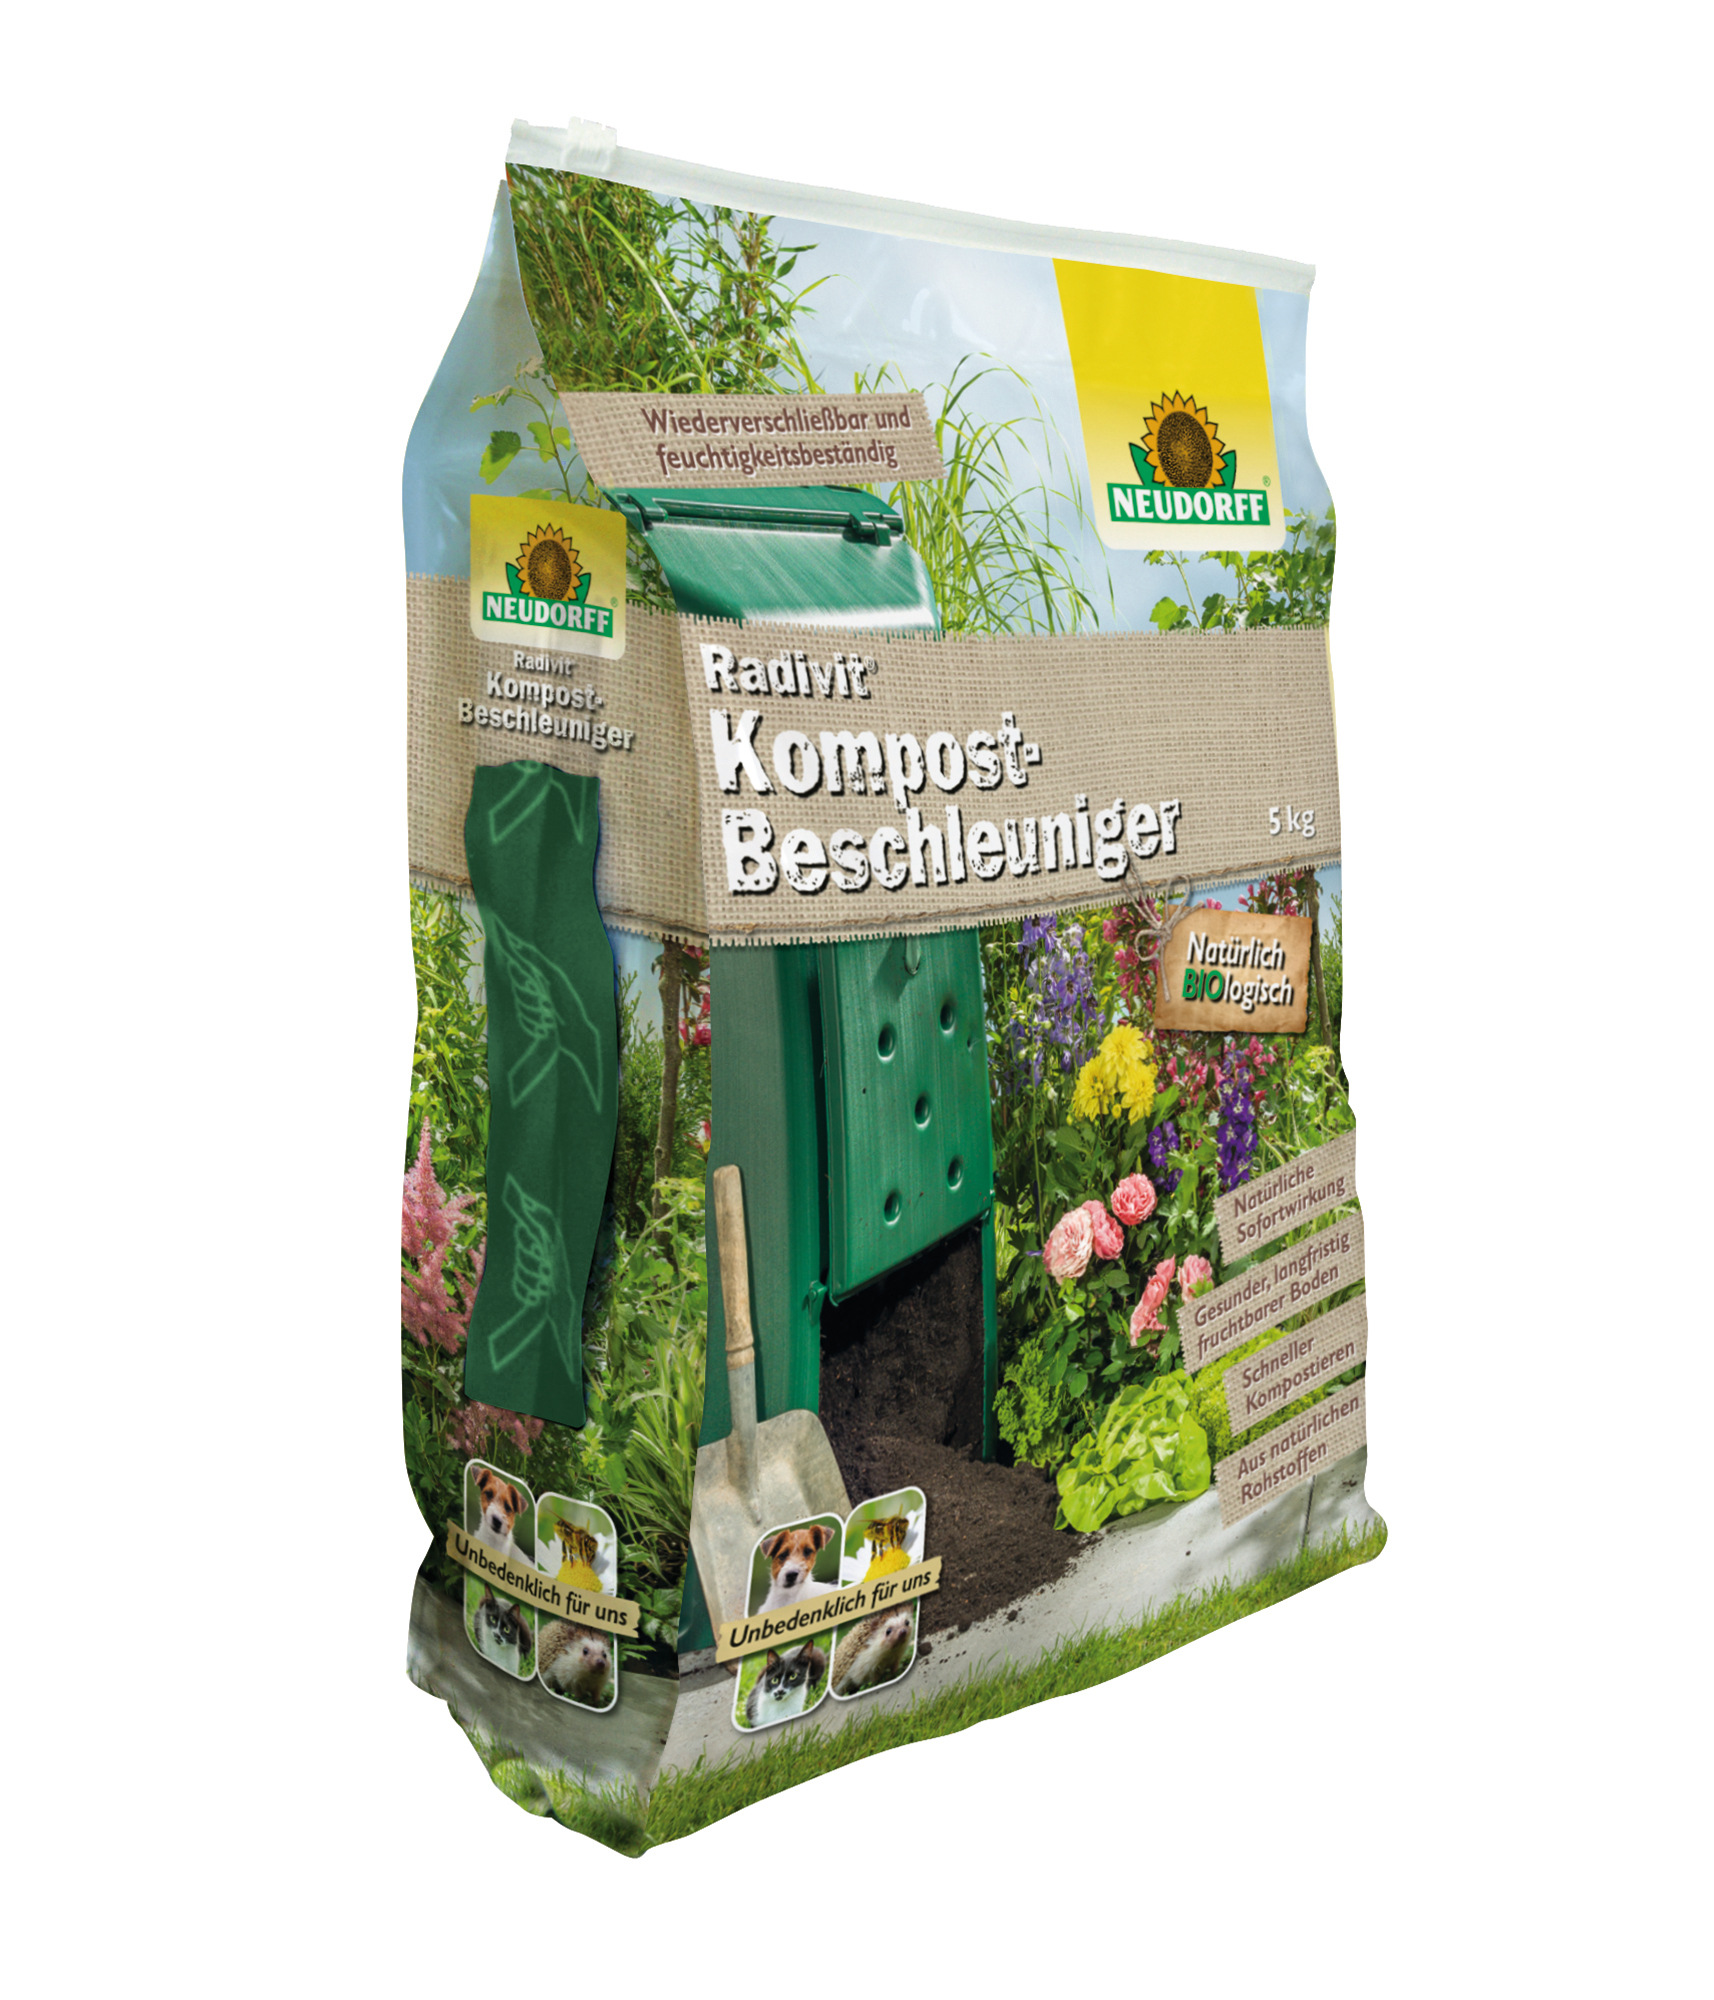 Radivit Kompost-Beschleuniger   5 Kg